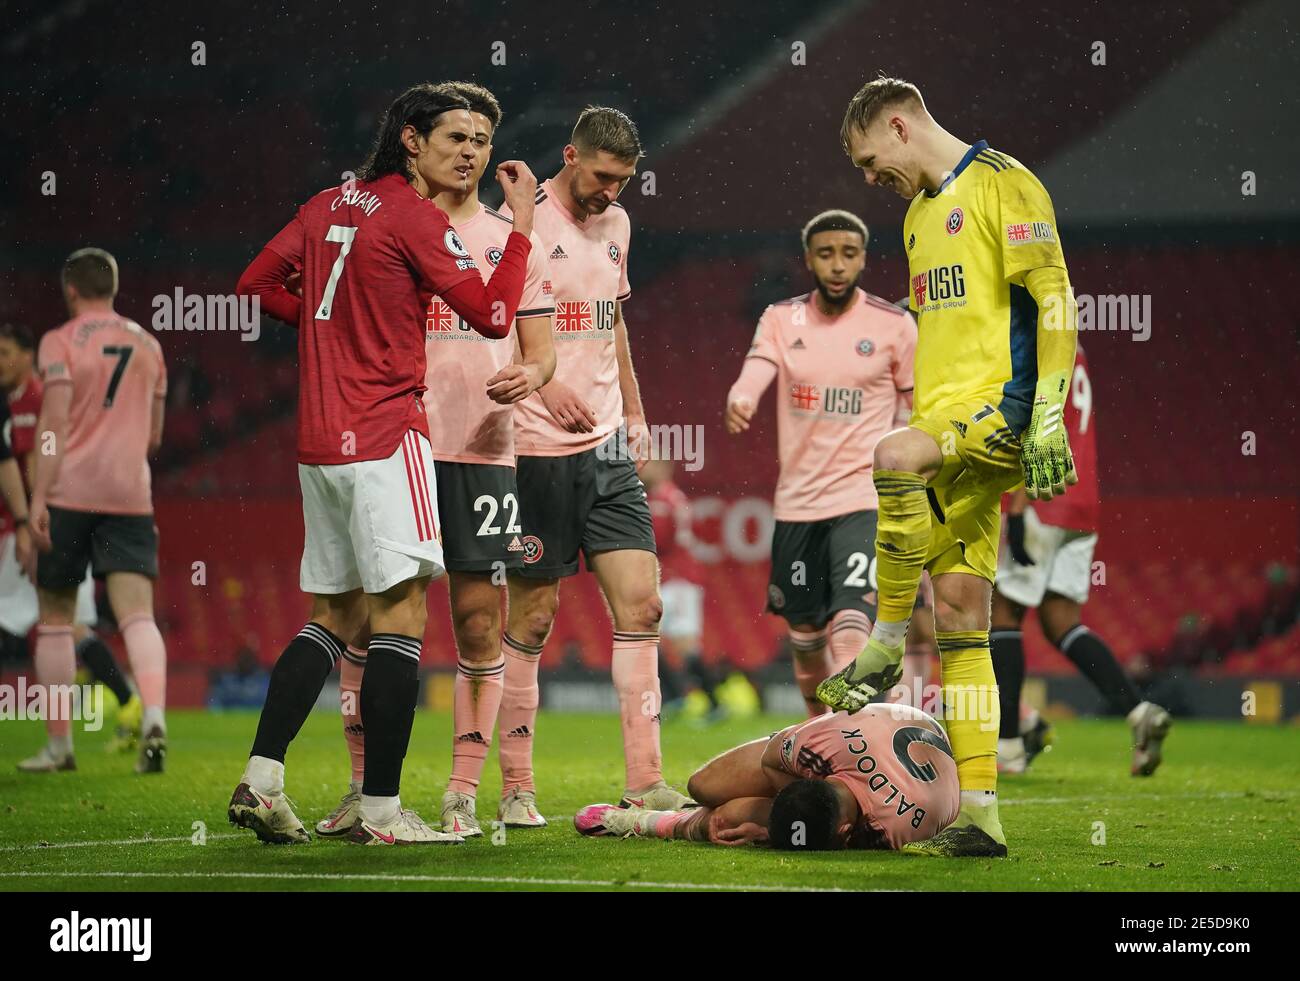 Edinson Cavani (a sinistra) di Manchester United reagisce durante la partita della Premier League a Old Trafford, Manchester. Data immagine: Mercoledì 27 gennaio 2021. Foto Stock